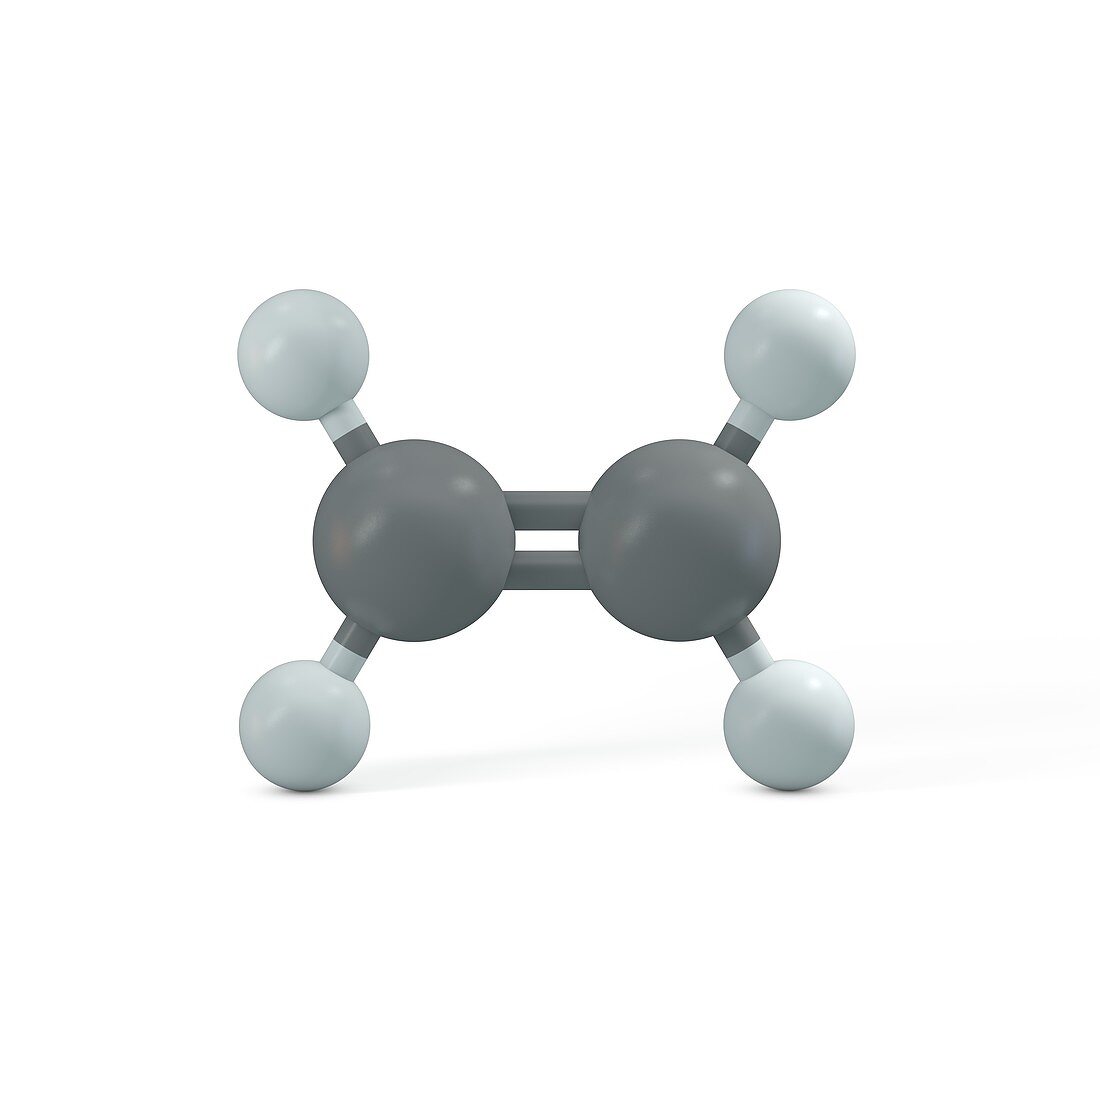 Ethene molecule, illustration